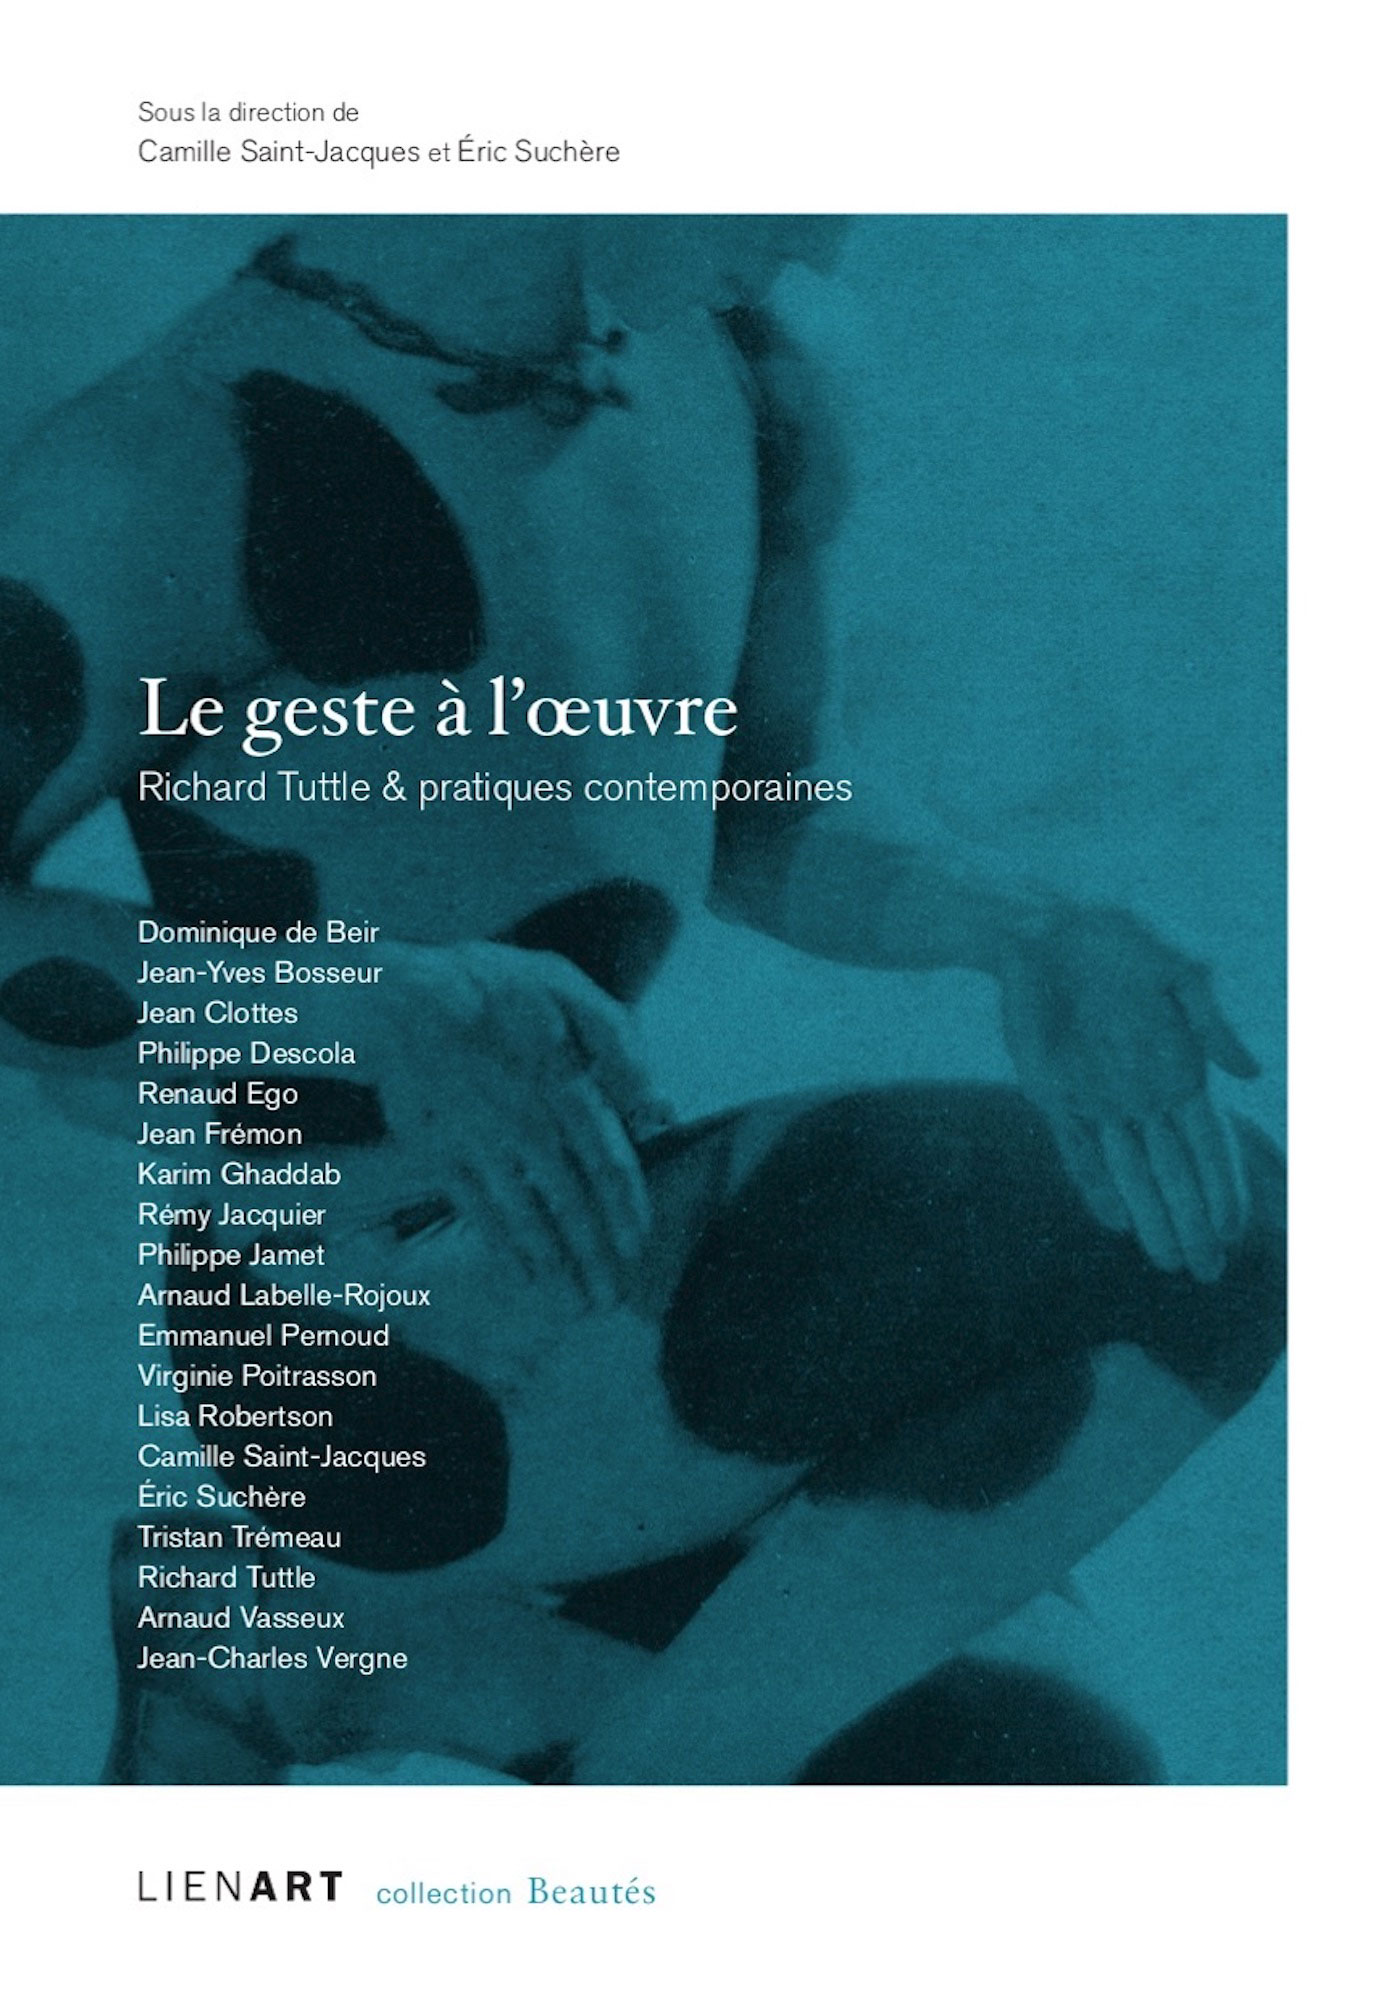 Beautés, Le Geste à l'œuvre, Richard Tuttle & pratiques contemporaines, Lienart (couverture)